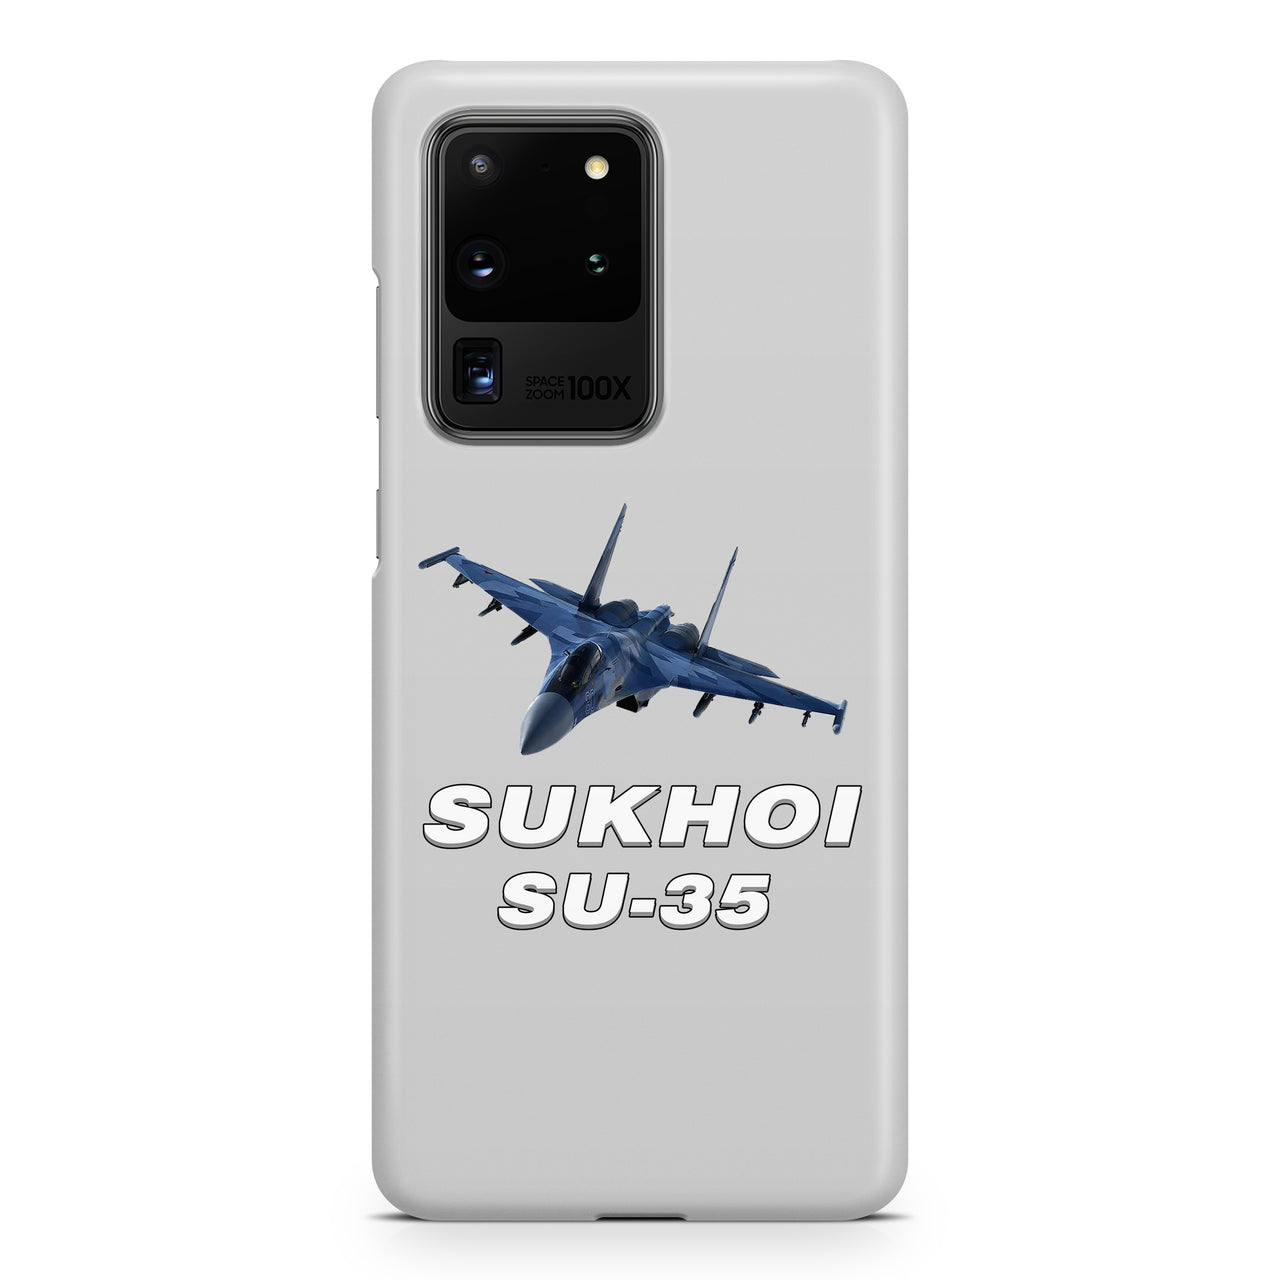 The Sukhoi SU-35 Samsung A Cases